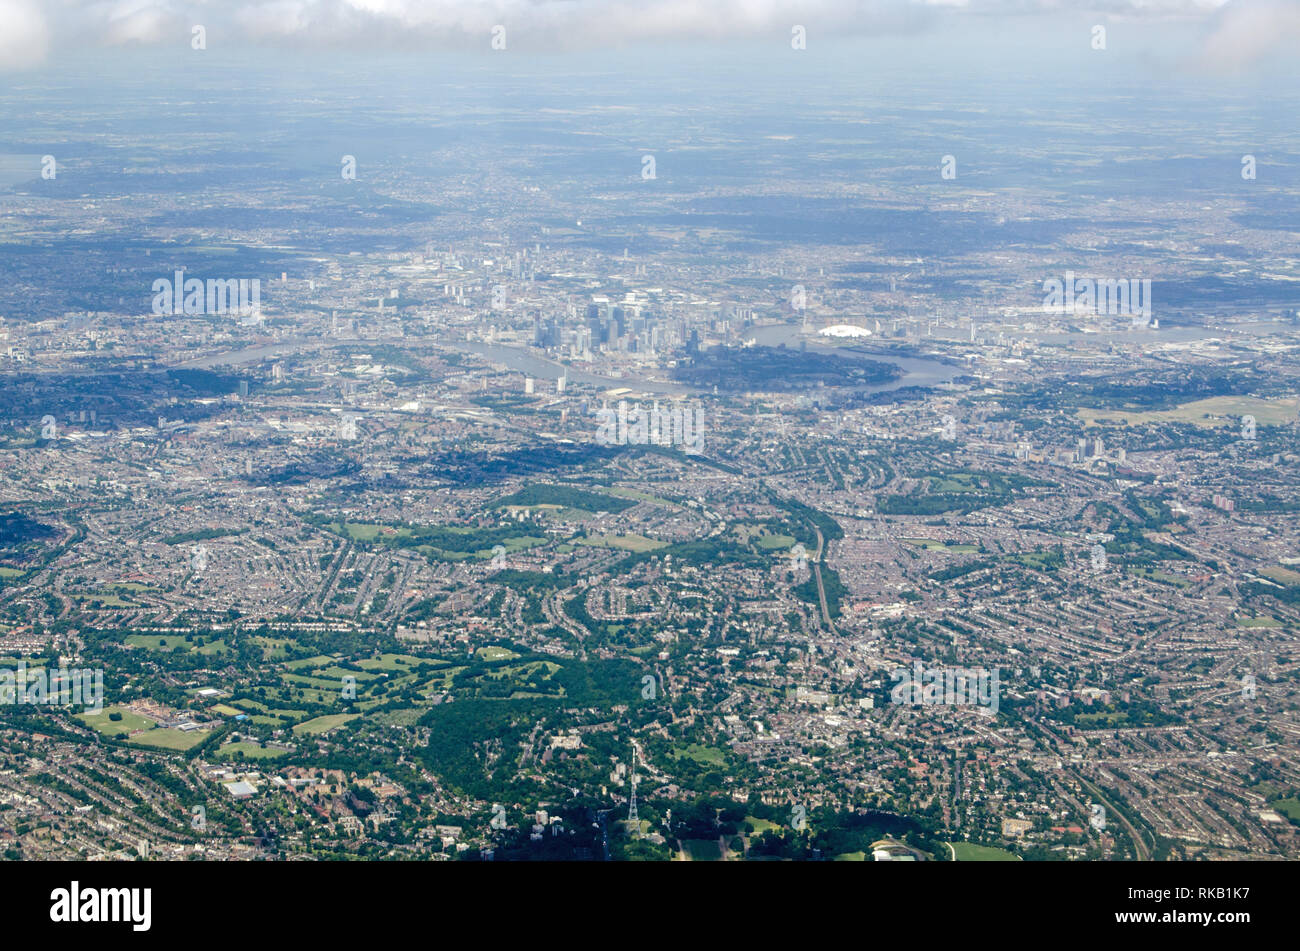 Vista aerea attraverso il sud est di Londra con il palazzo di cristallo nella parte inferiore dell'immagine, Dulwich College in fondo a sinistra e i grattacieli di Canary Foto Stock